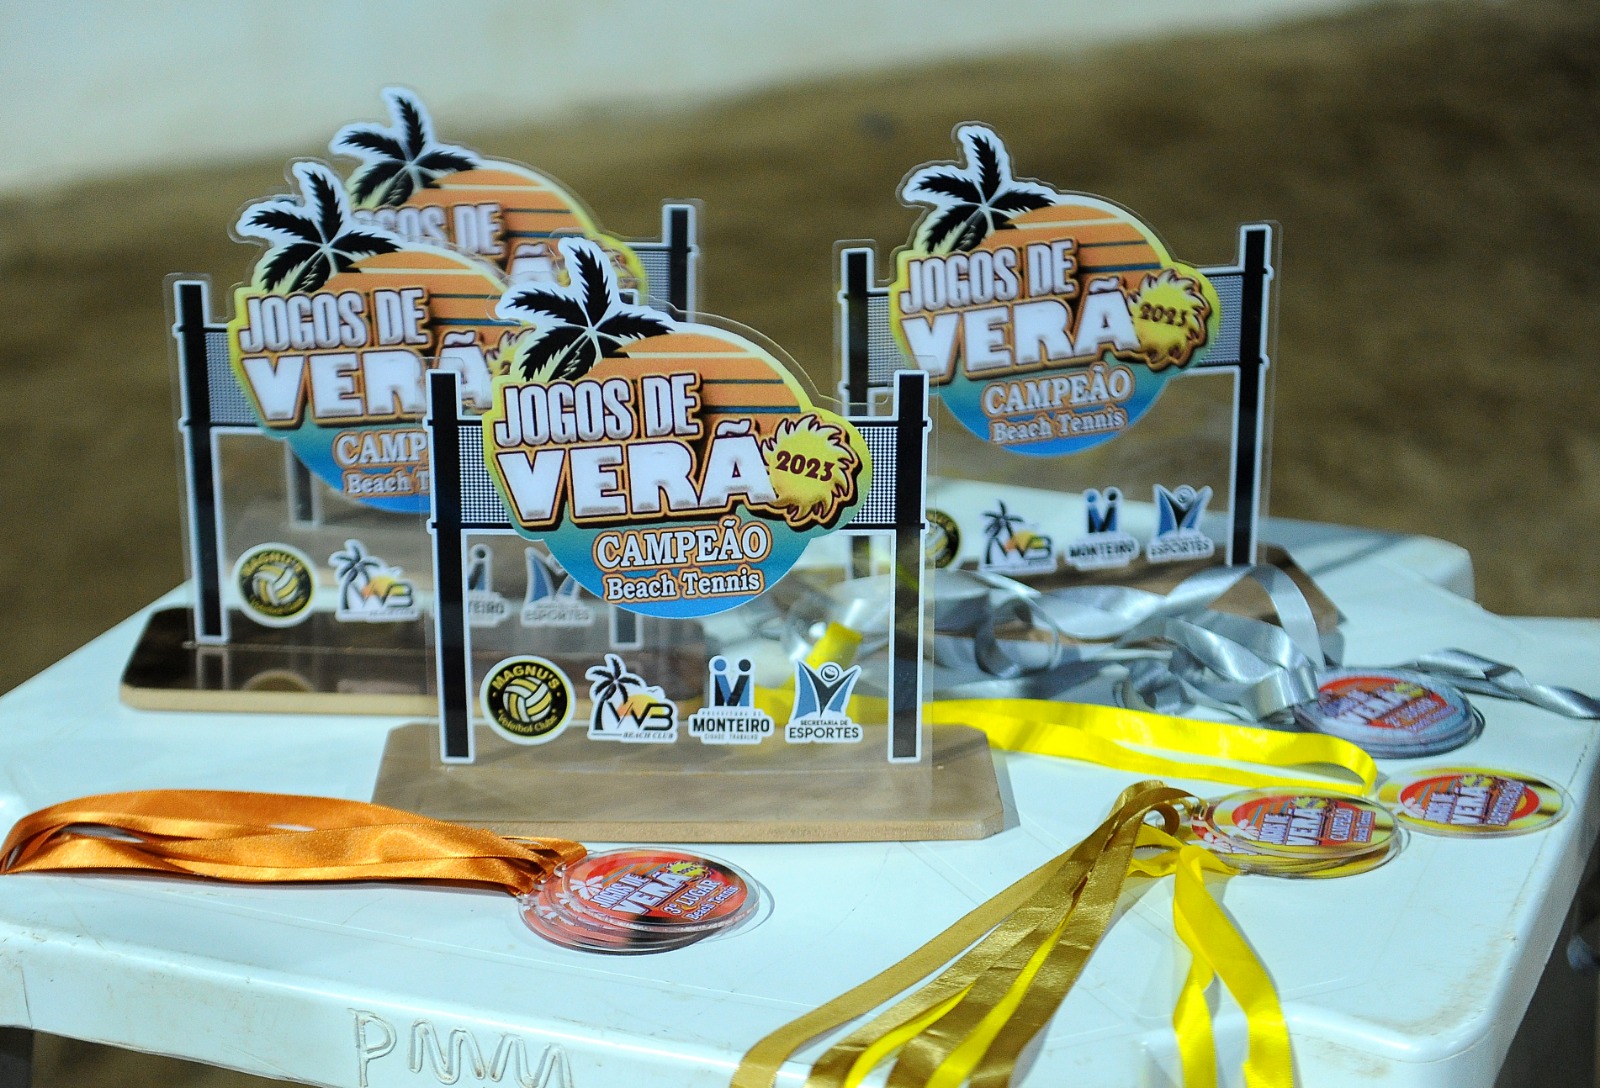 Jogos-de-Verao-27 Com participação recorde, competição de beach tennis encerra com chave de ouro a 1ª edição dos Jogos de Verão de Monteiro